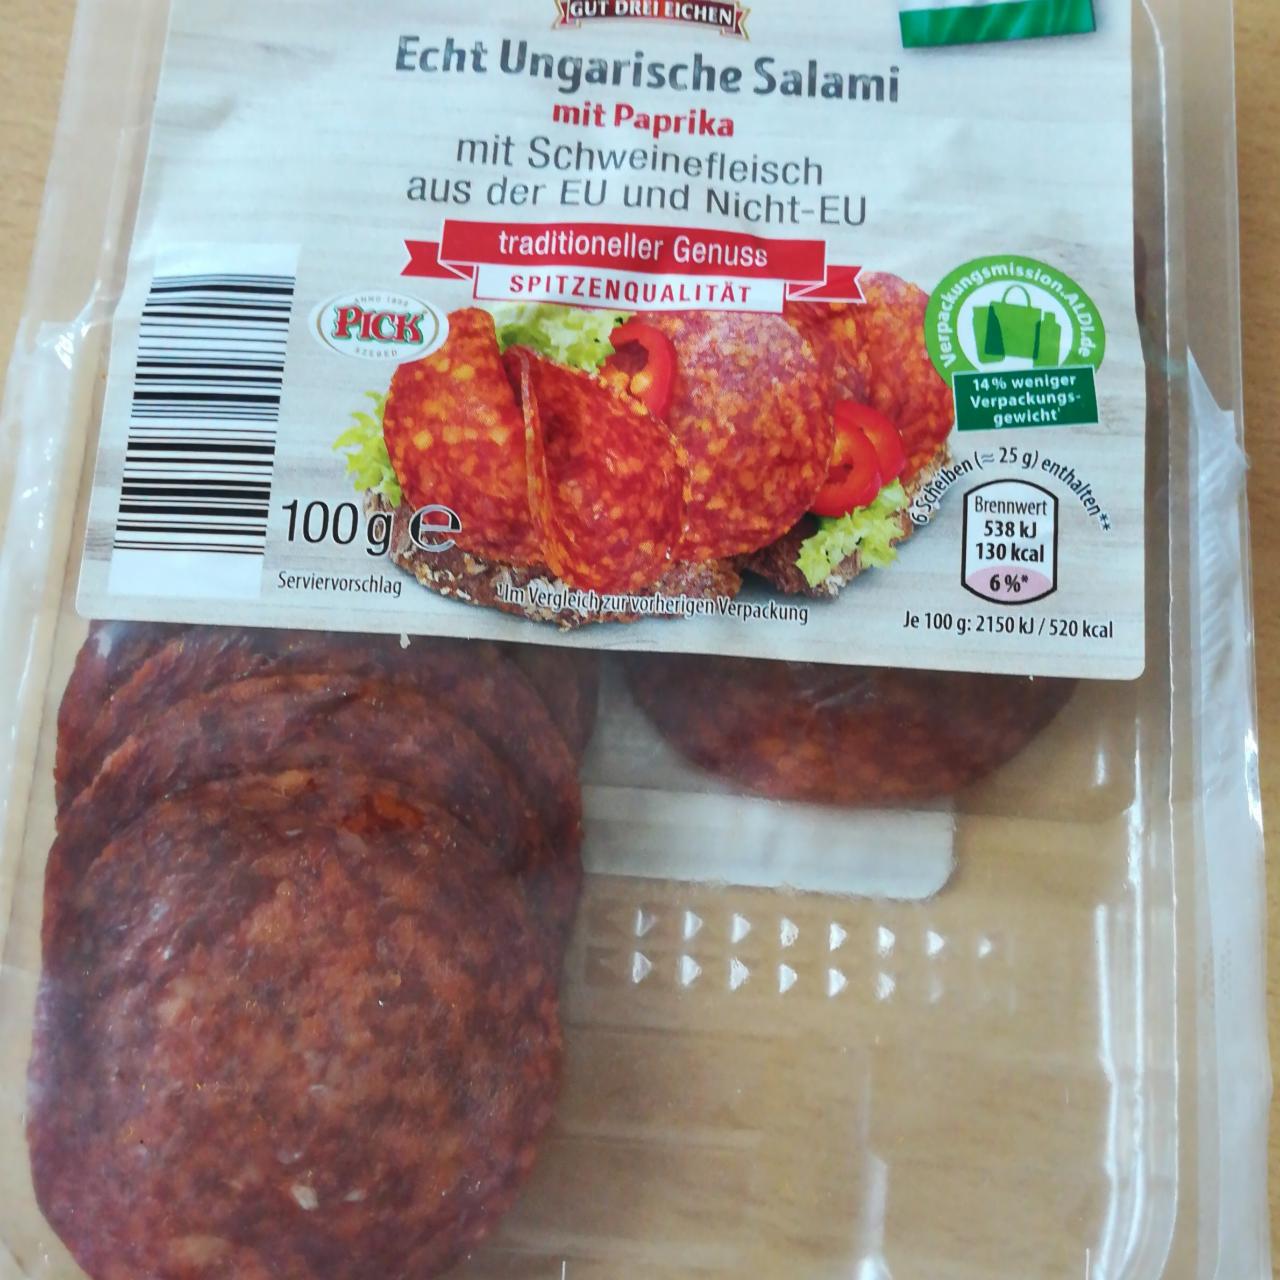 Fotografie - Echt Ungarische Salami mit Paprika Gut drei Eichen